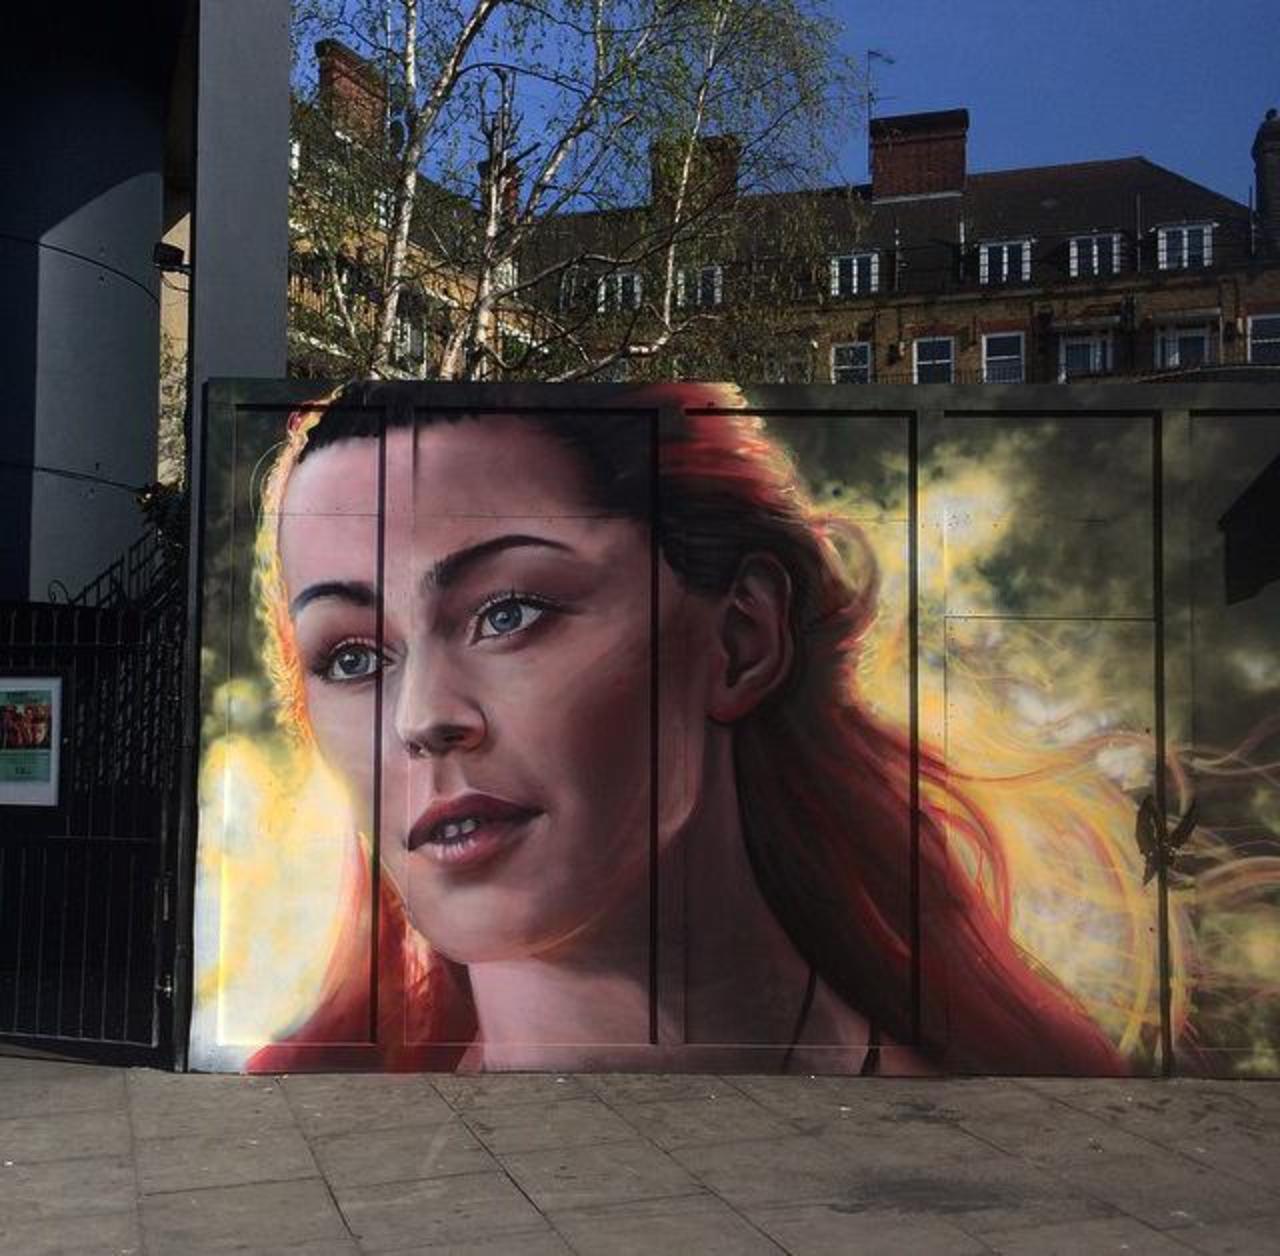 New Street Art portrait by whoamirony in Camden Market, London 

#art #arte #graffiti #streetart http://t.co/l3NGUF6dOY